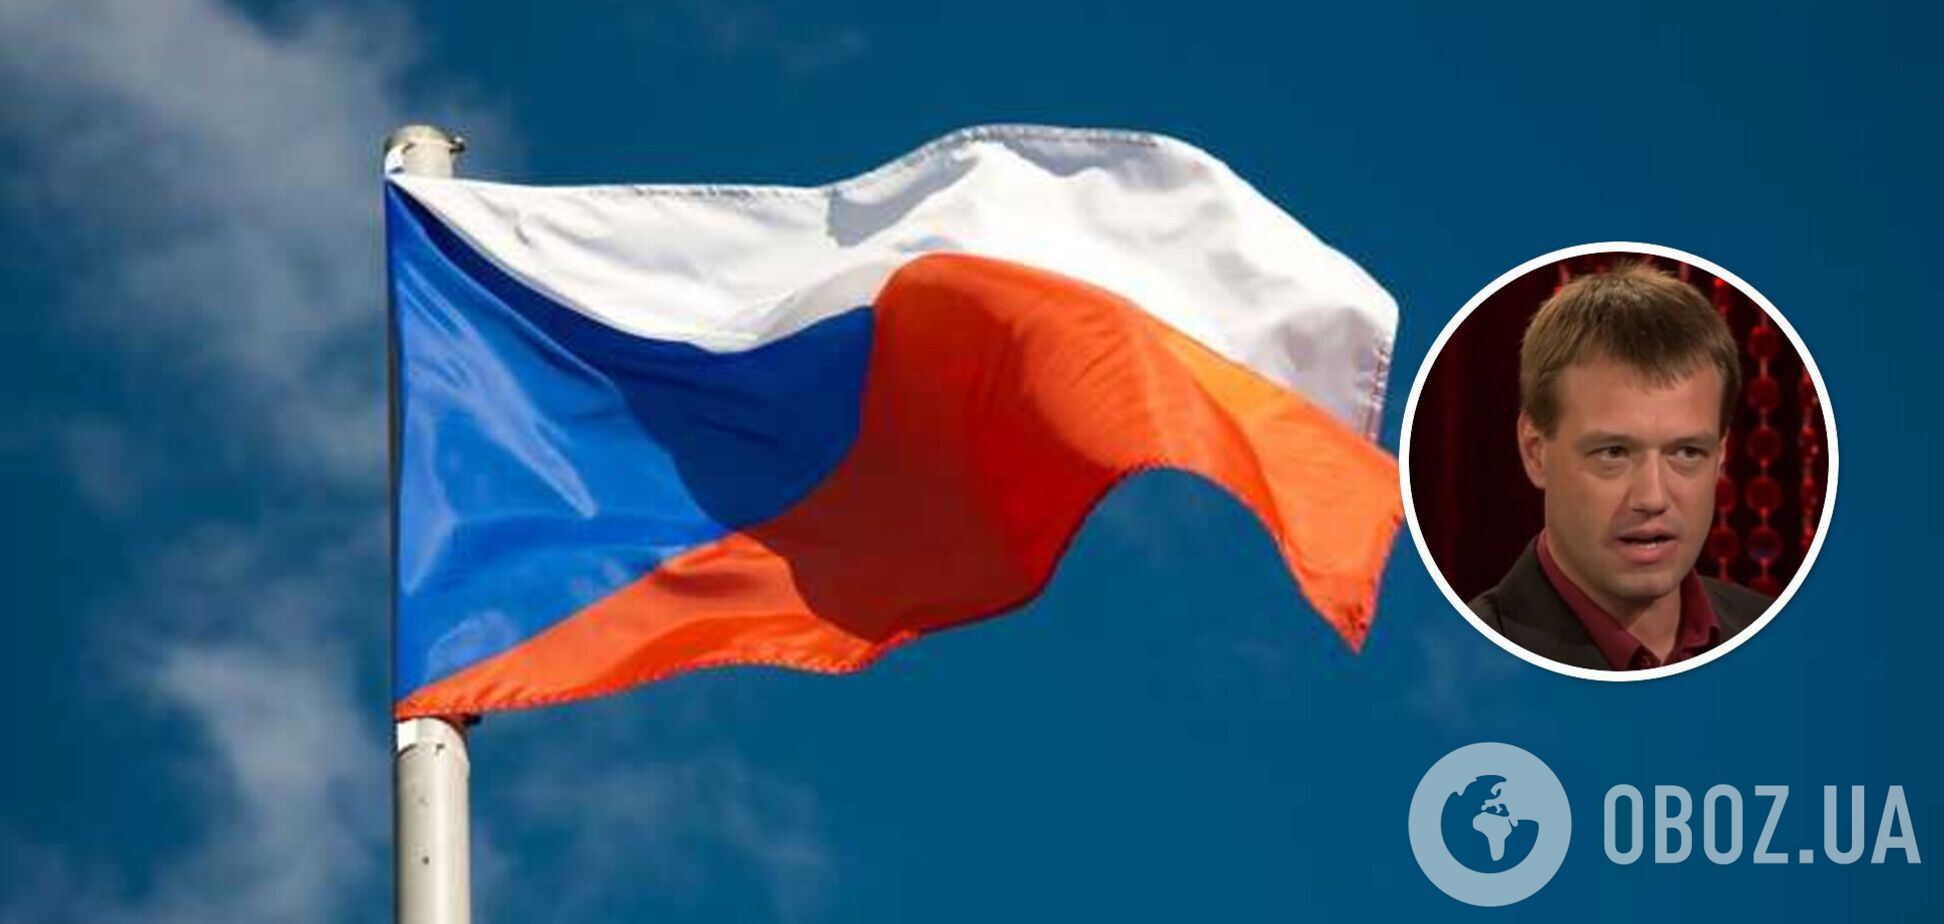 Угроза нацбезопасности: Чехия высылает из страны гражданина Украины, распространявшего российскую пропаганду